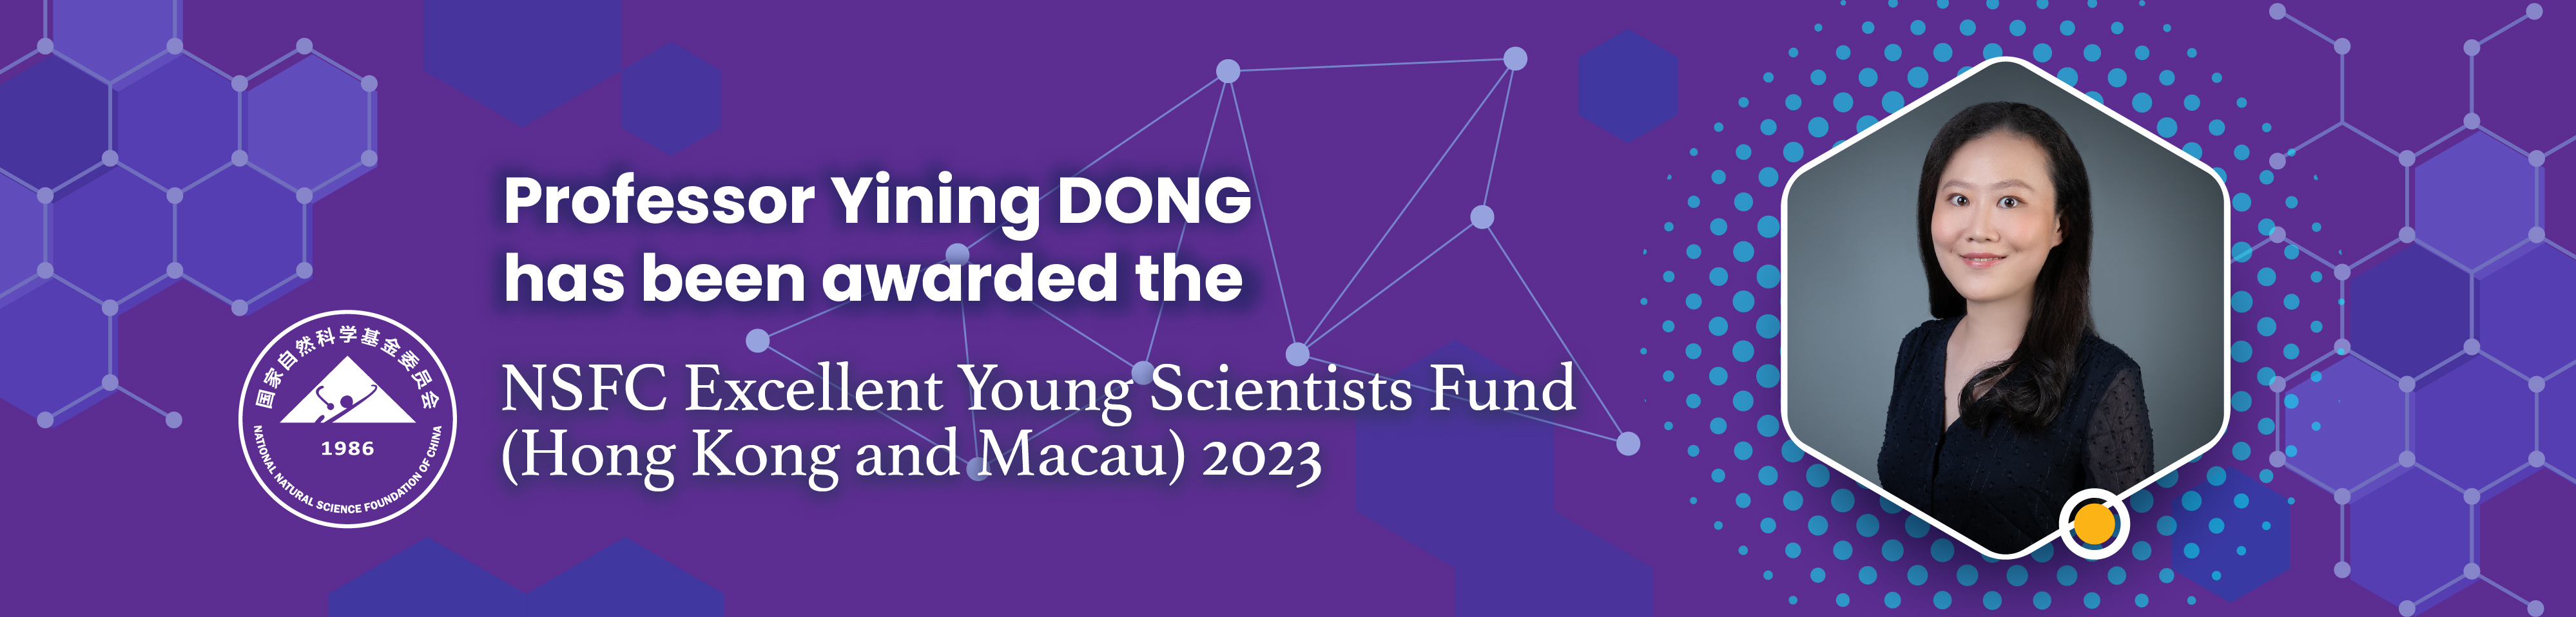 Professor Yining DONG awarded NSFC 2023